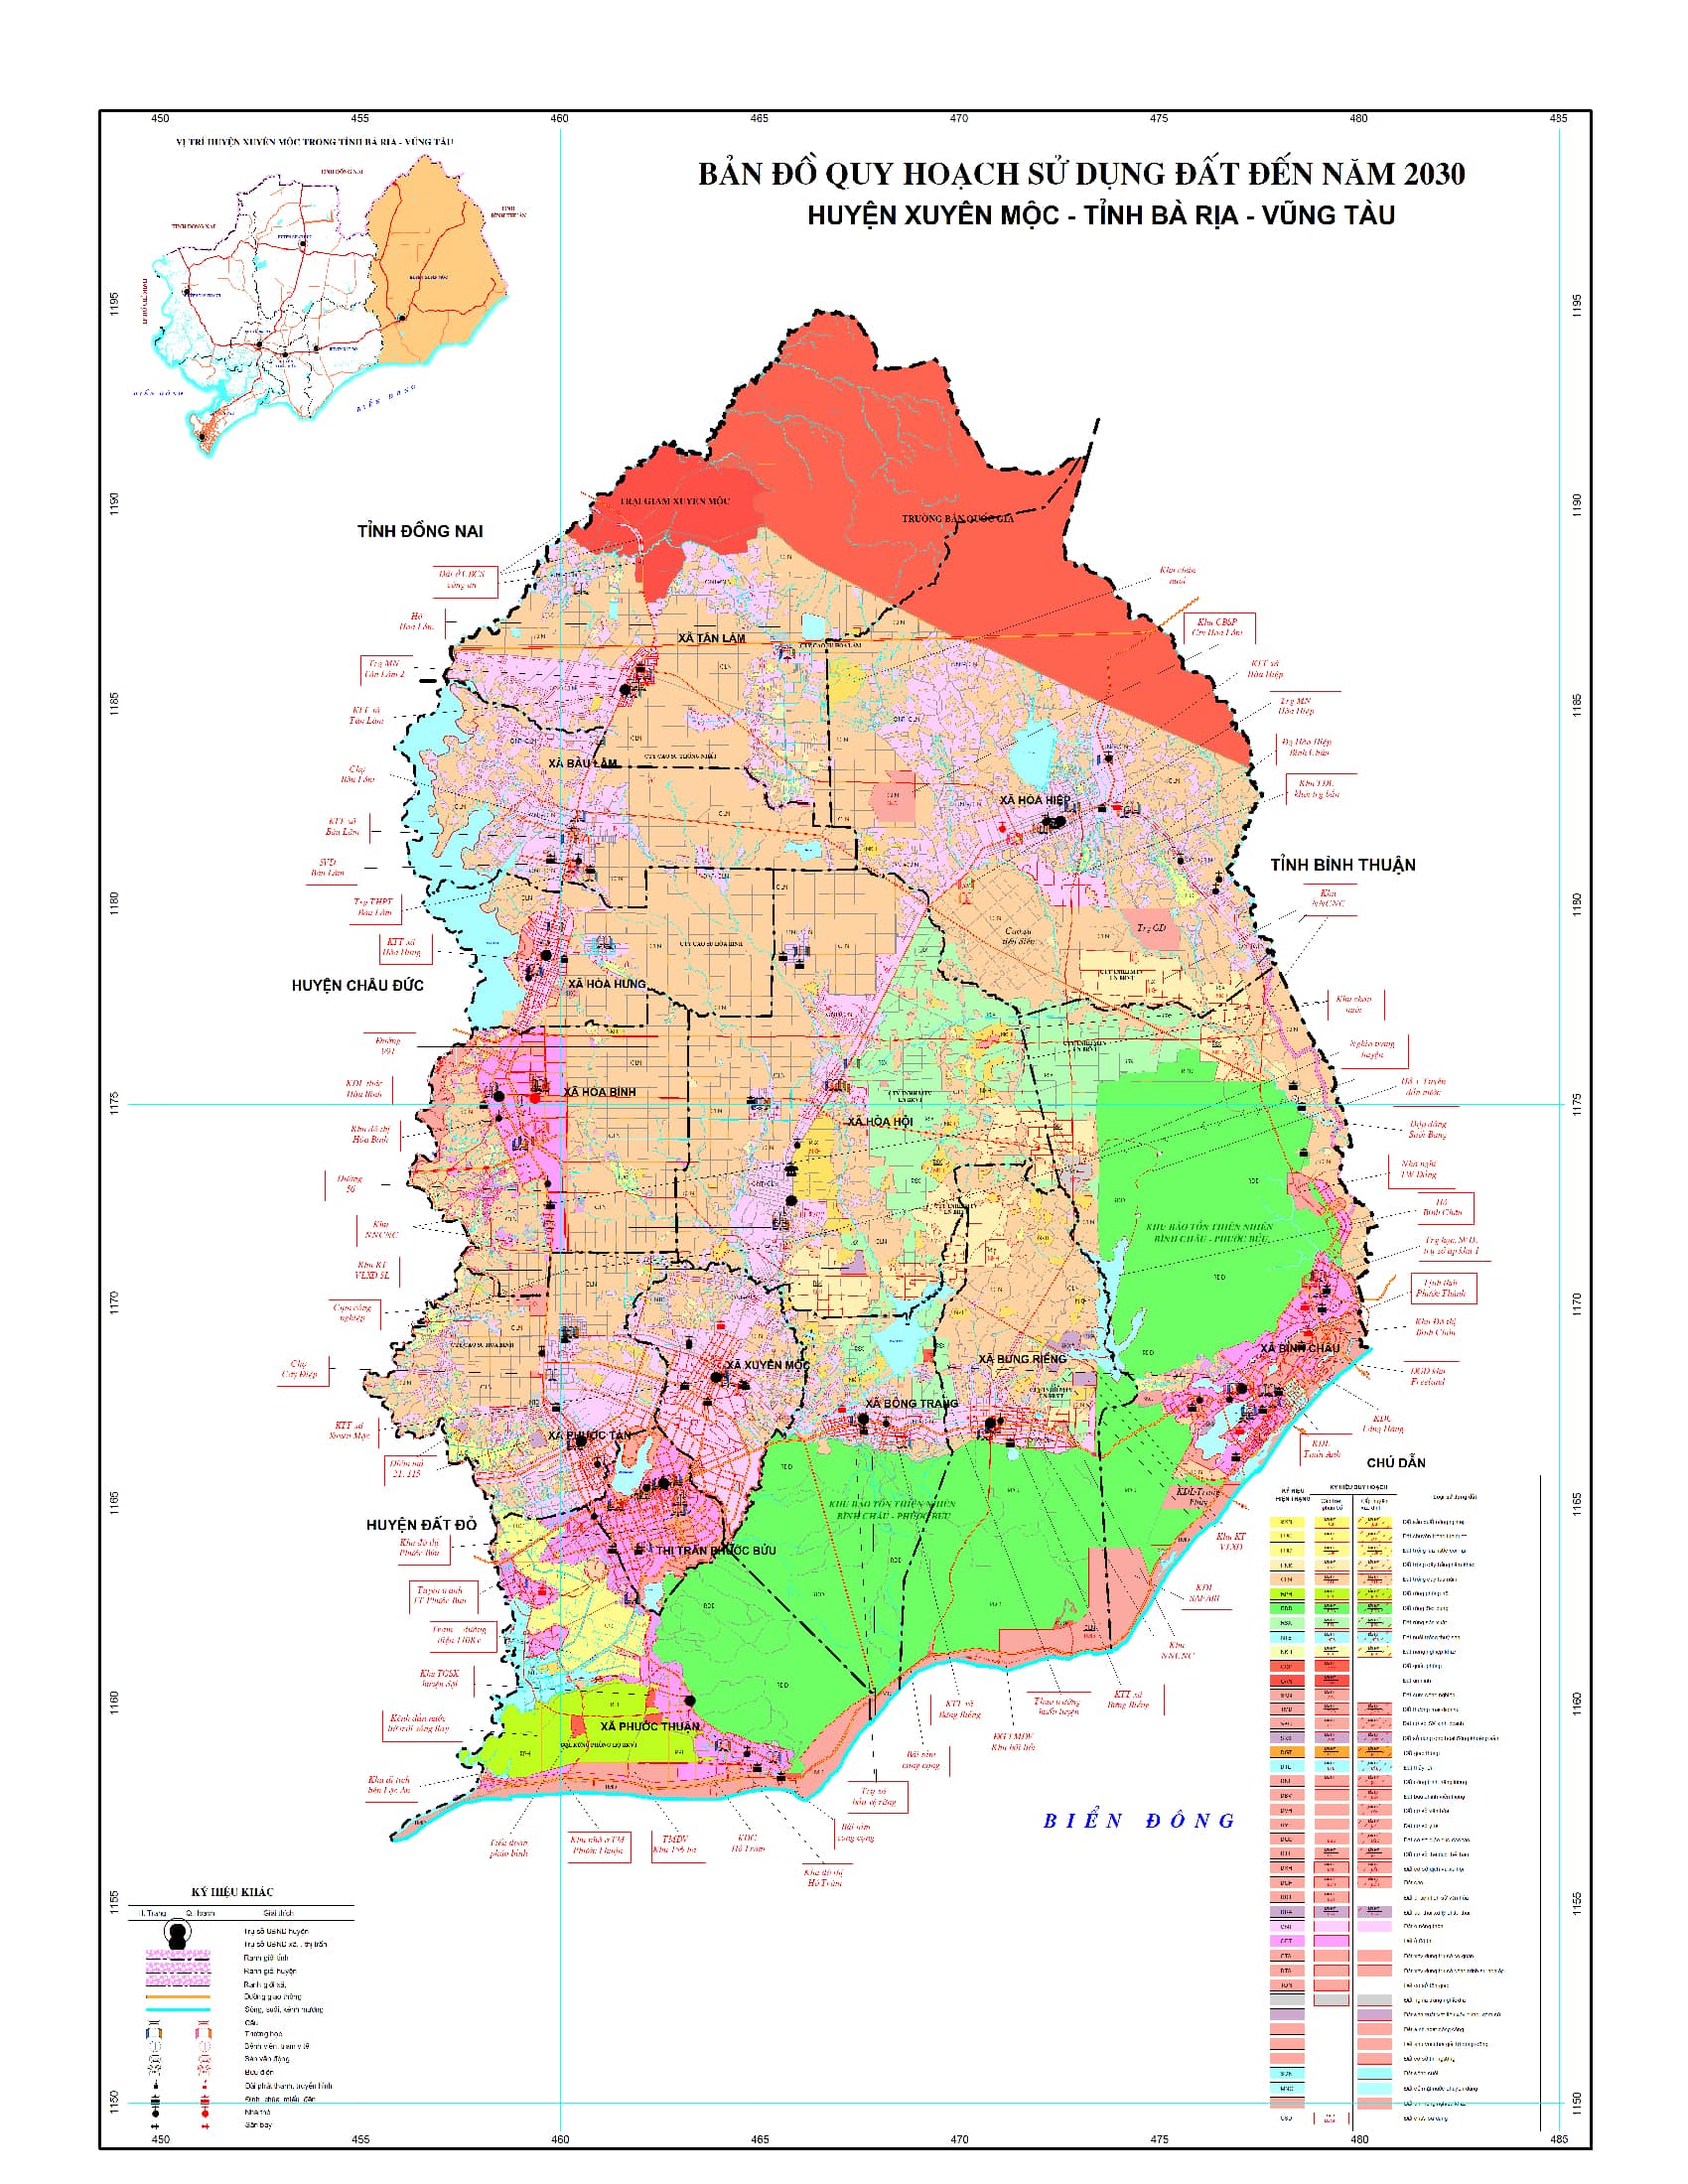 Bản đồ quy hoạch huyện Xuyên Mộc, tỉnh Bà Rịa - Vũng Tàu đến năm 2030 - Tân Đại Thành Group